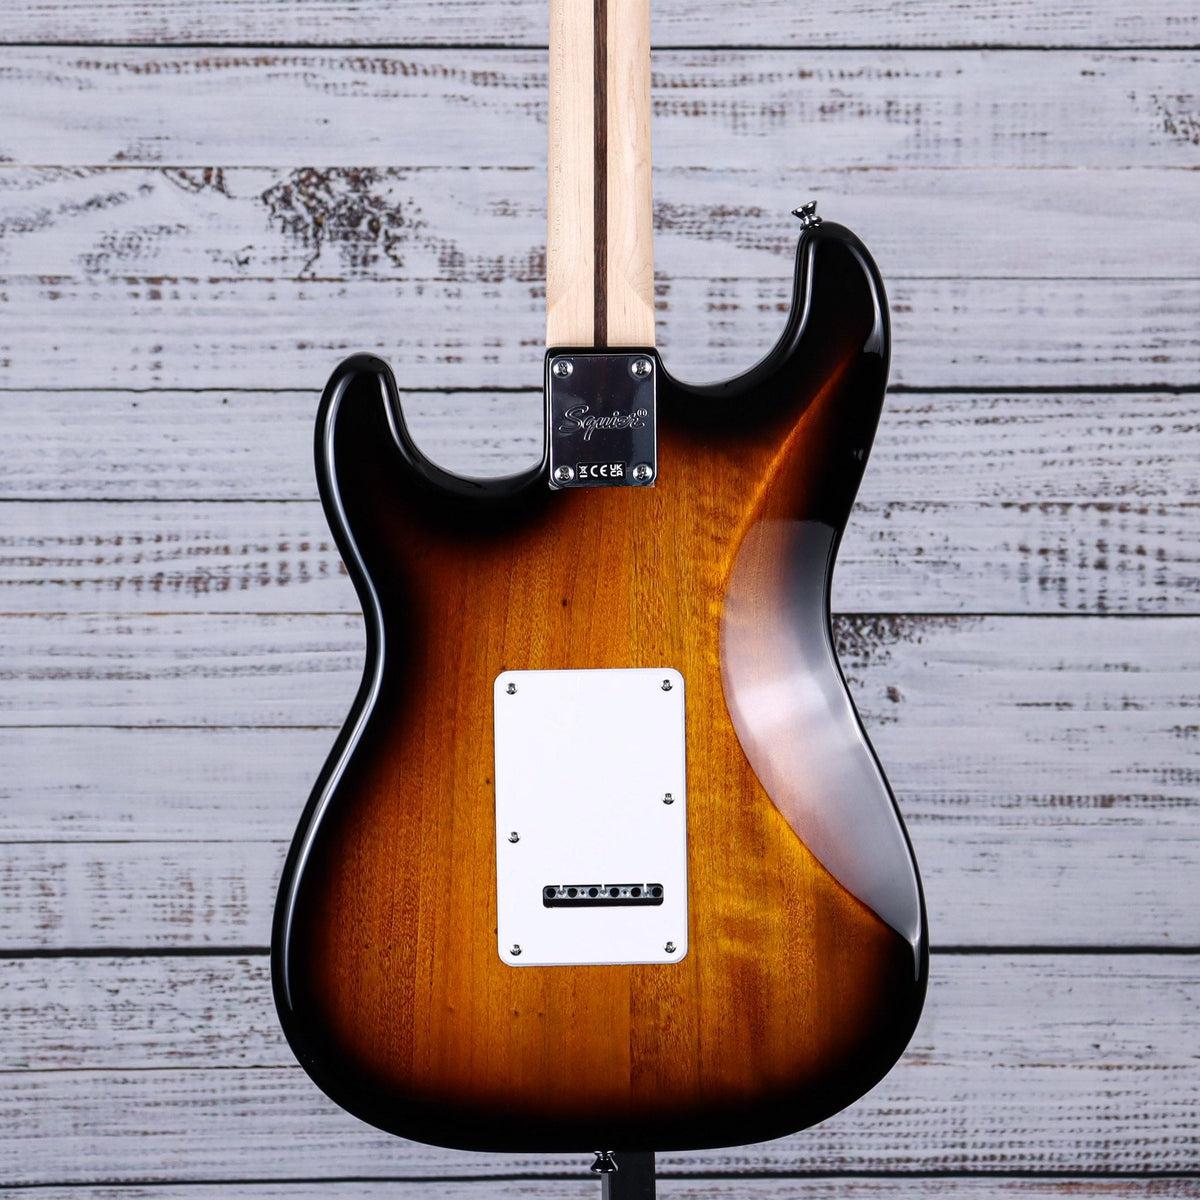 Guitare électrique Squier Sonic Stratocaster, Sunburst 2 couleurs, touche  en érable, plaque de protection blanche 0373152503